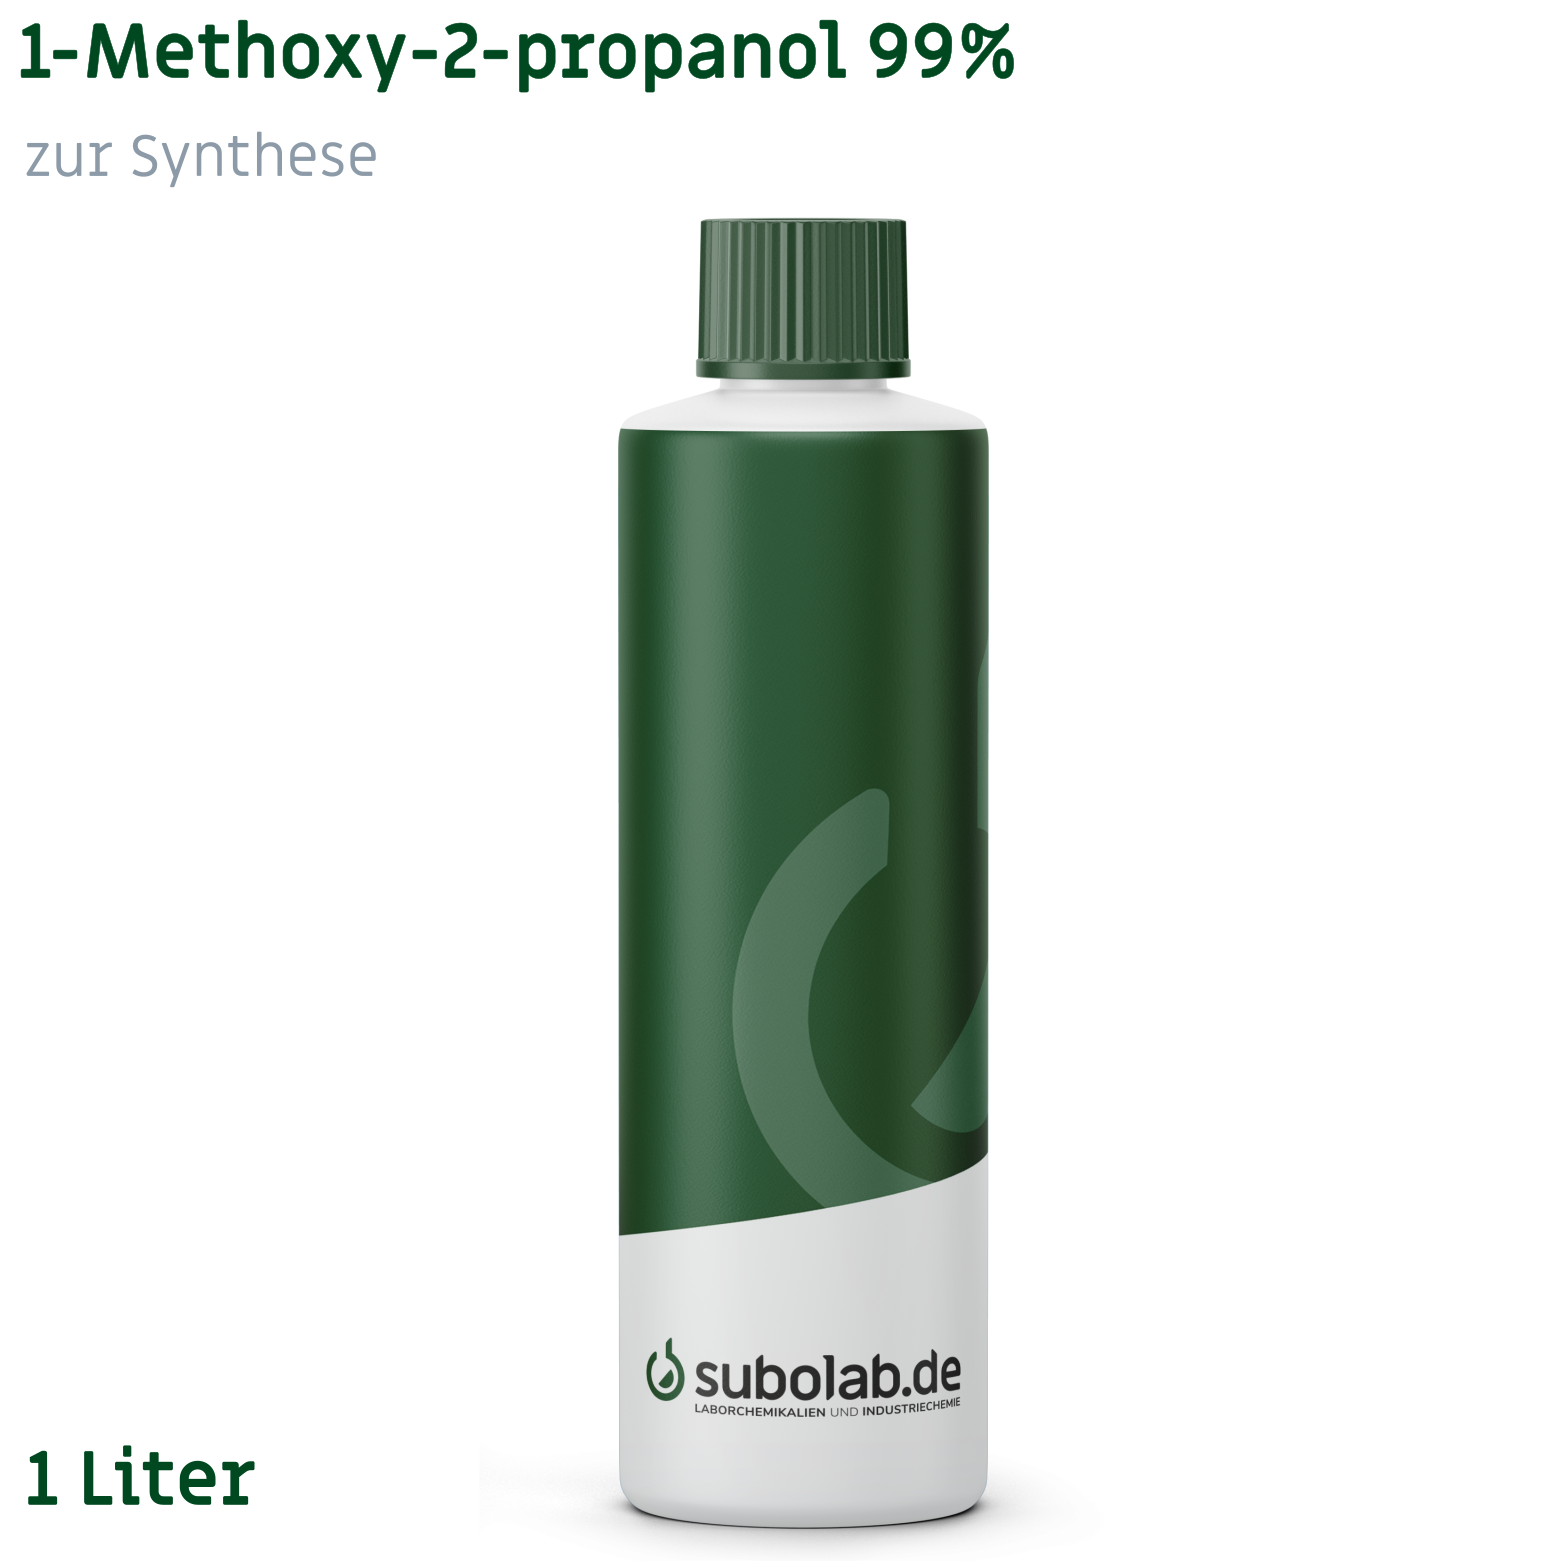 Bild von 1-Methoxy-2-propanol 99% zur Synthese (1 Liter)